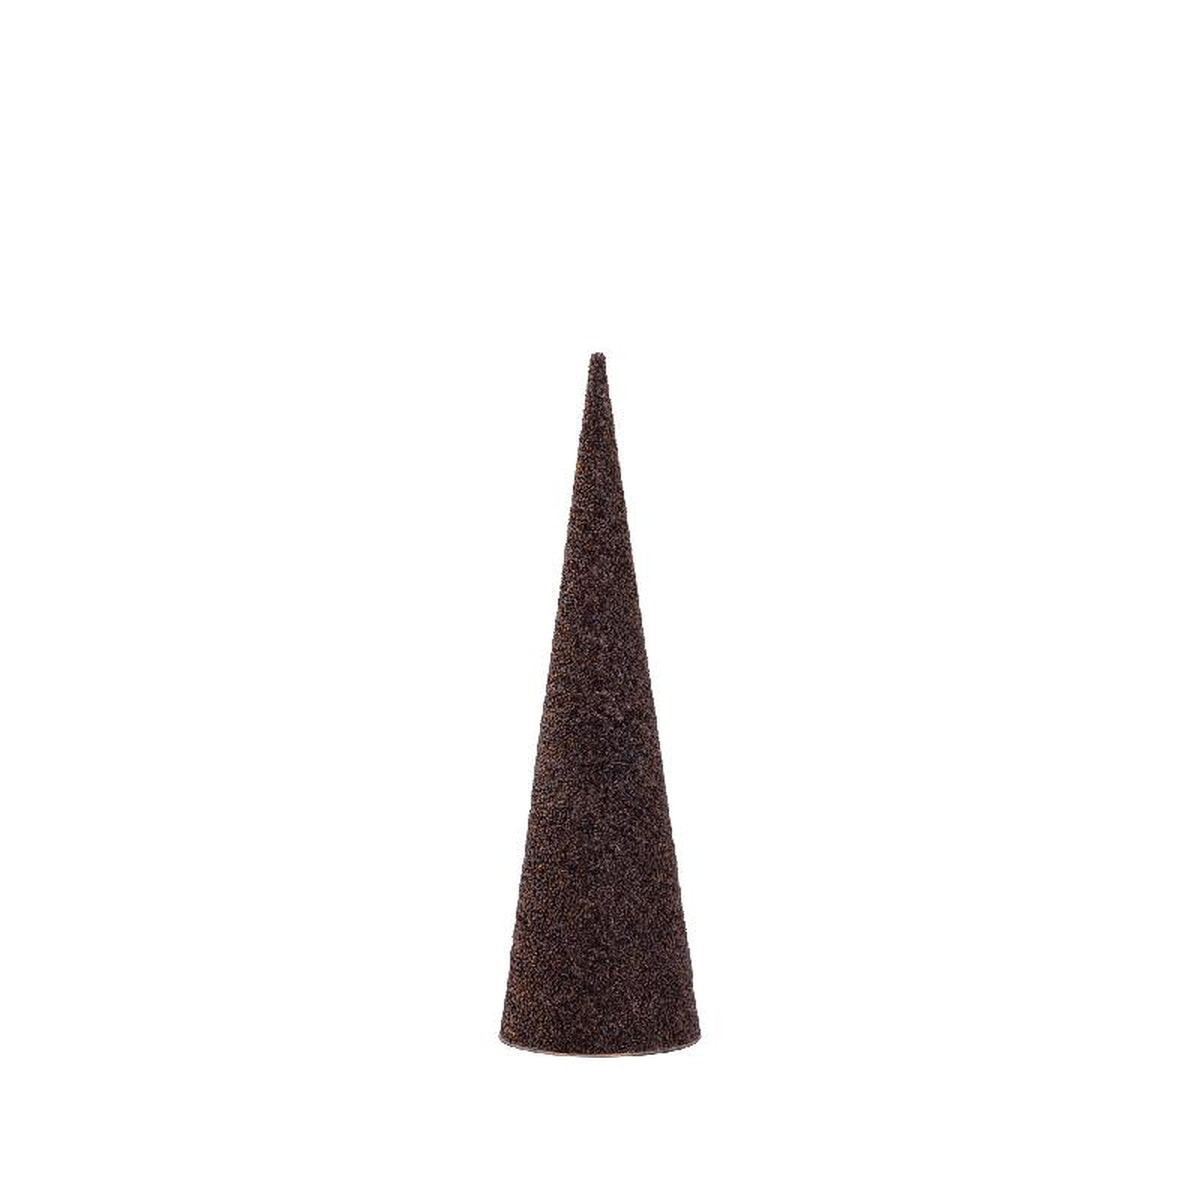 Ptmd décoration de noël tahani - 11.5x11.5x41 cm - le fer - marron